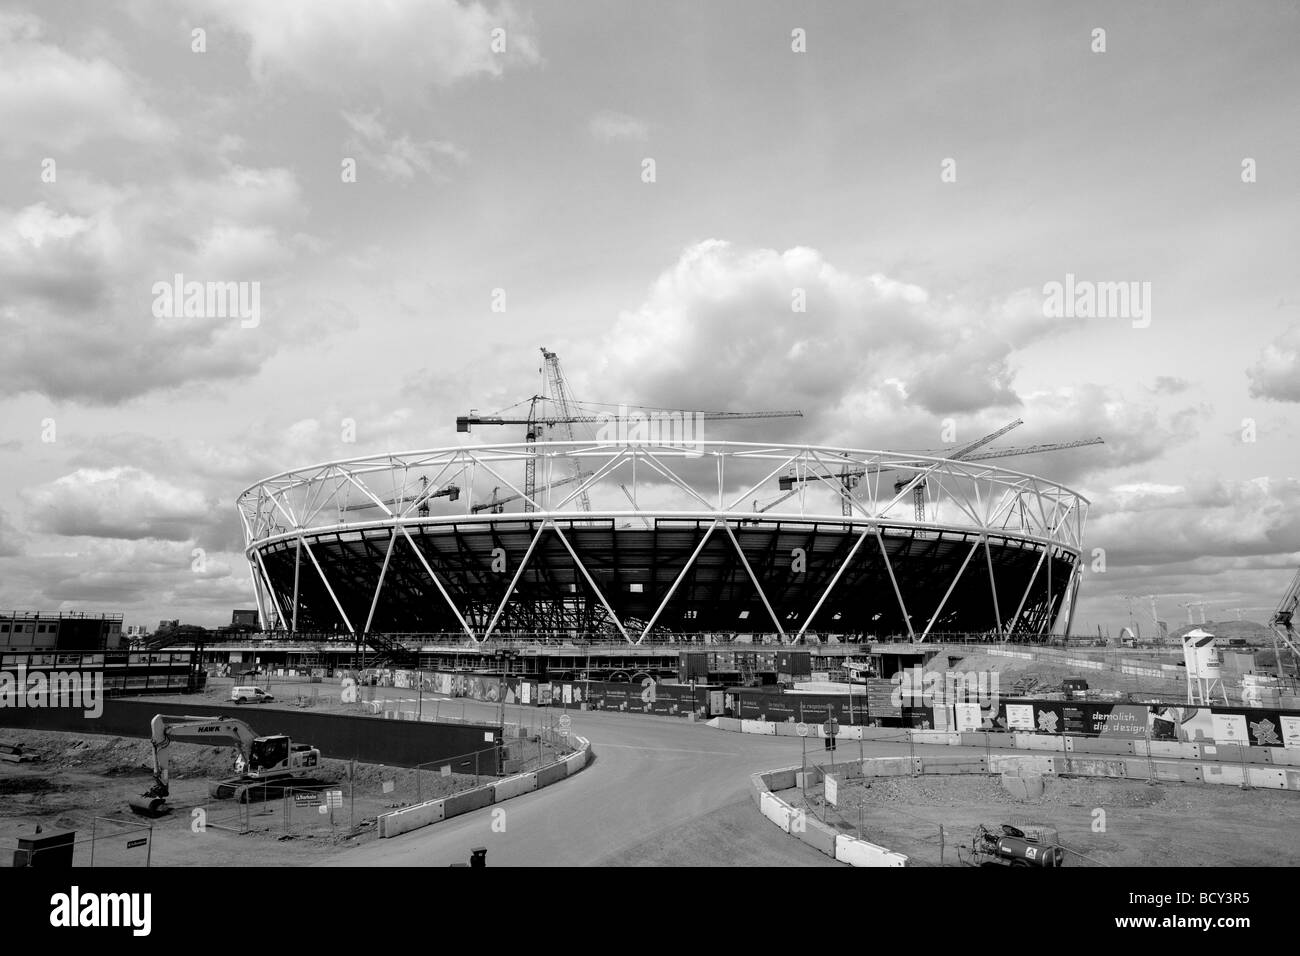 Le stade olympique de Londres 2012 en construction Mai 2009 Banque D'Images